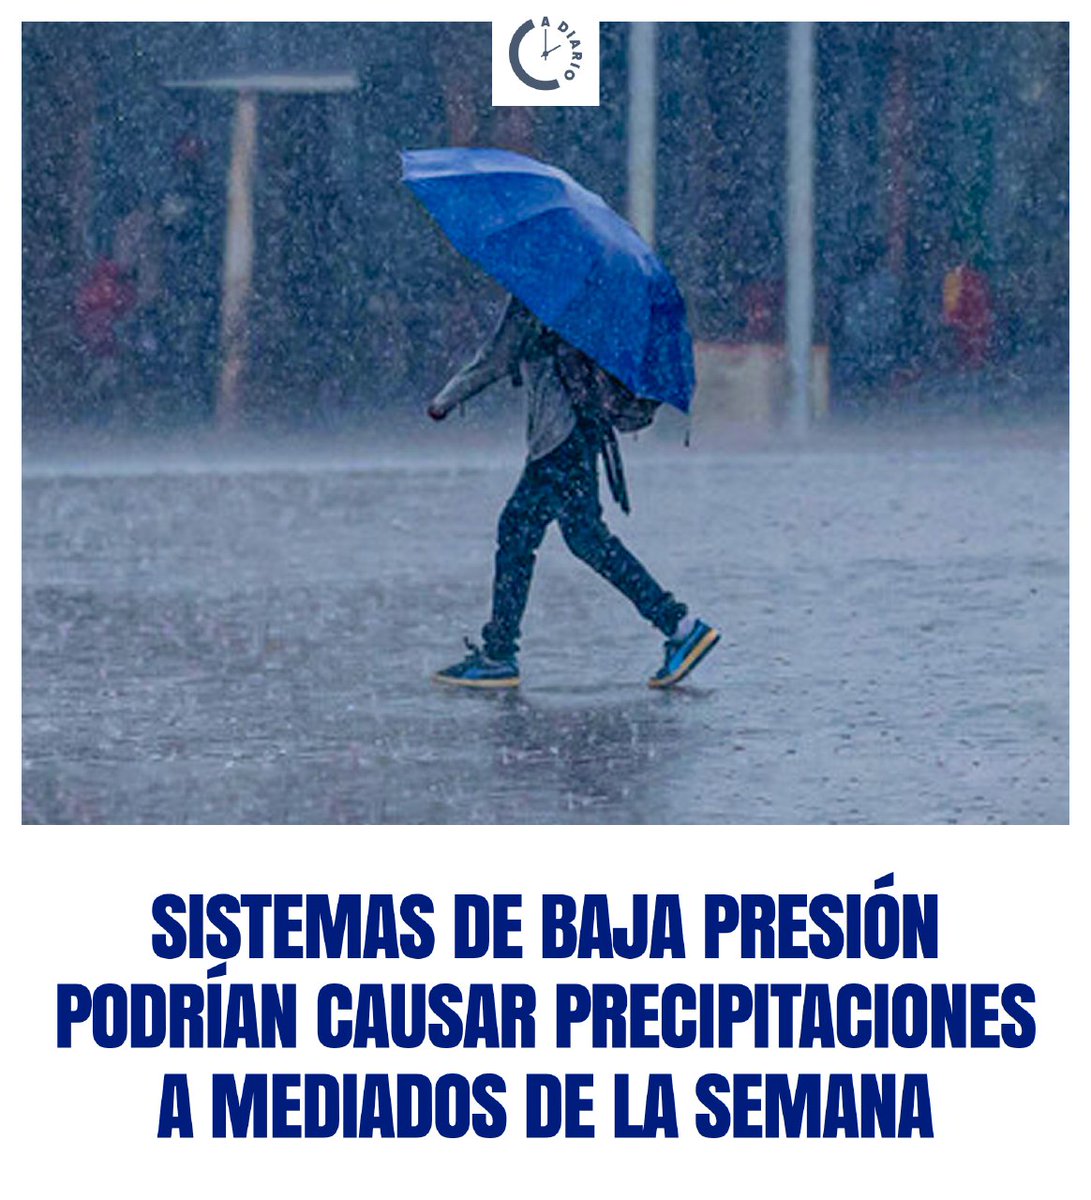 INETER advierte sobre posibilidades de lluvias para esta semana en Nicaragua.☔🌧️

Se esperan temperaturas que oscilarán entre los 36 y 38 grados Celsius.

#Nicaragua
#Adiario